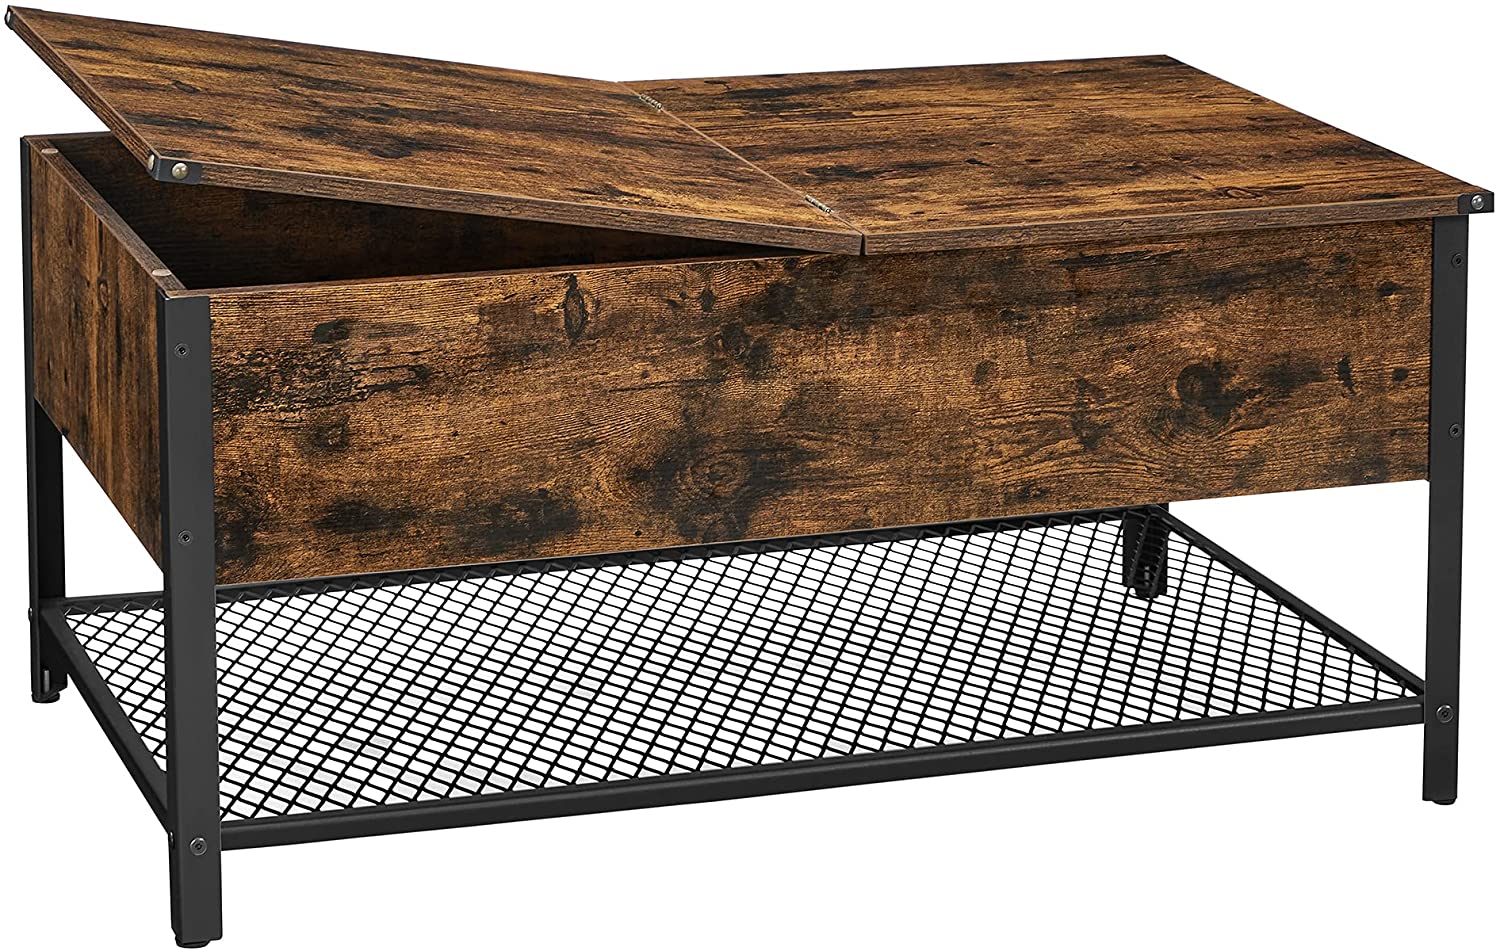 Table basse Buffalo Rock de Nancy - Table basse rectangulaire - Marron vintage et noir - 100 x 55 x 47 cm